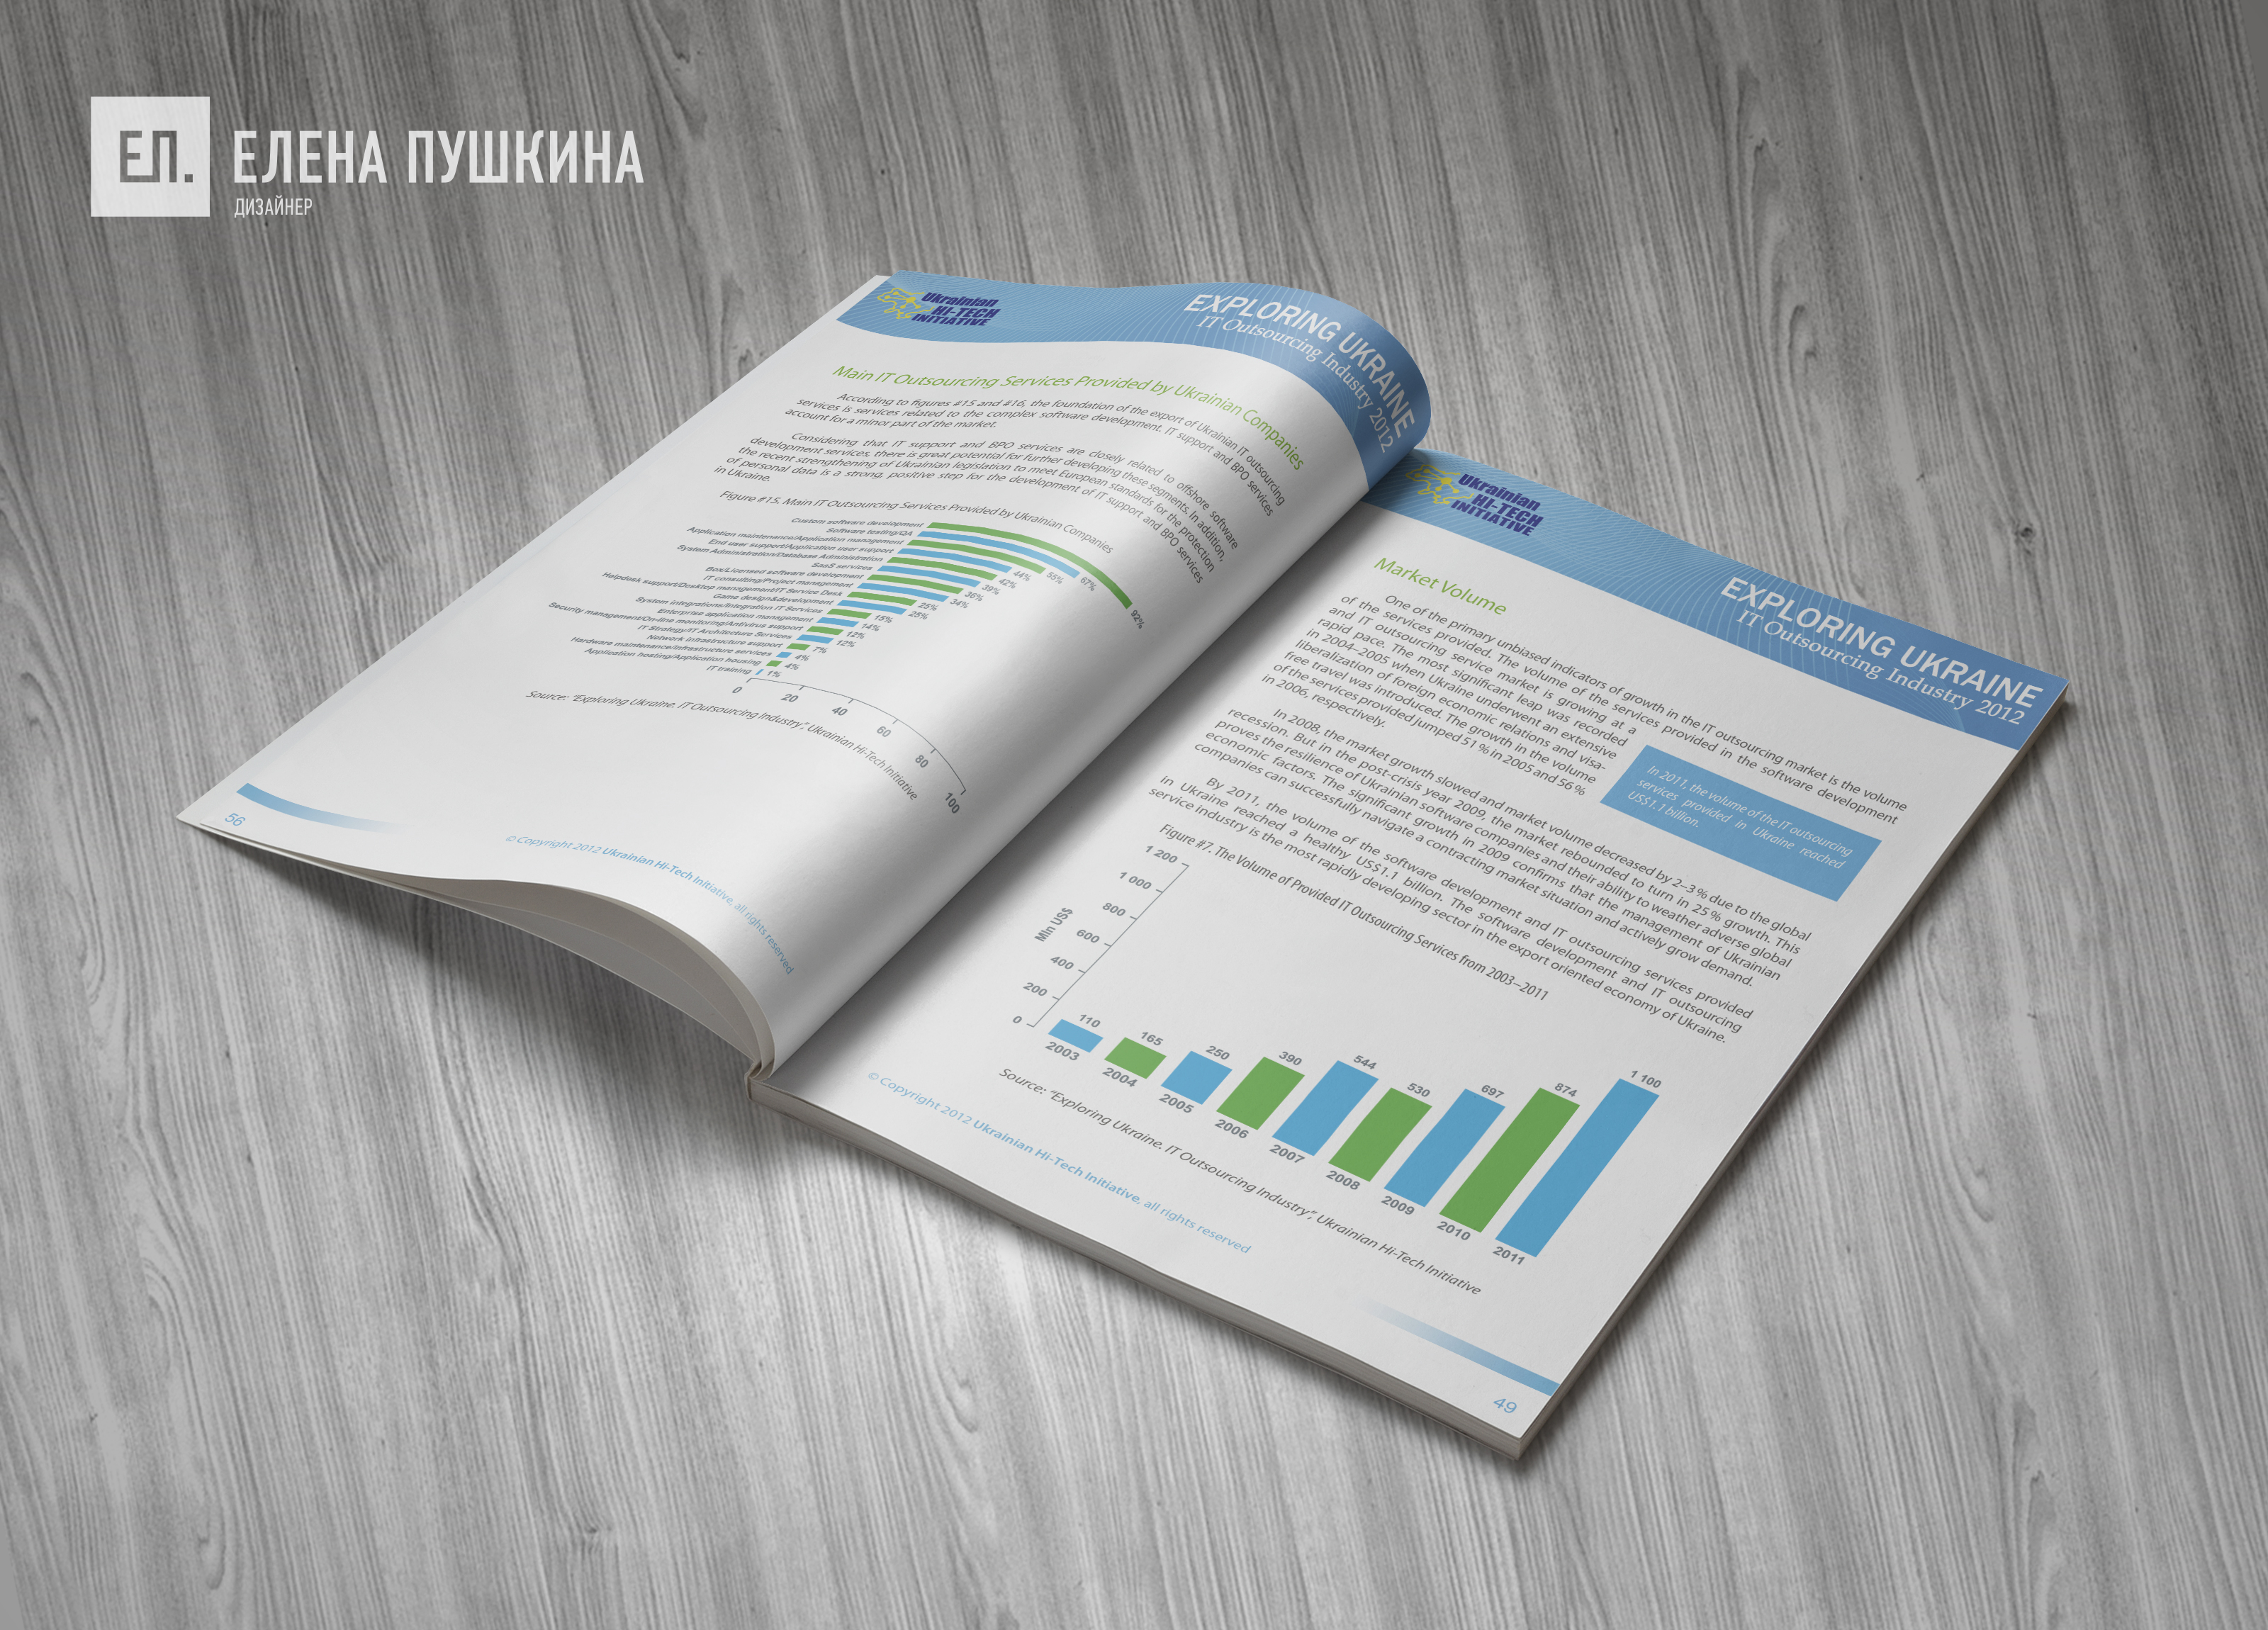 Аналитический отчёт «IT Outsourcing Industry» — дизайн с «нуля» обложки, макета, инфографики и вёрстка брошюры Дизайн каталогов Портфолио